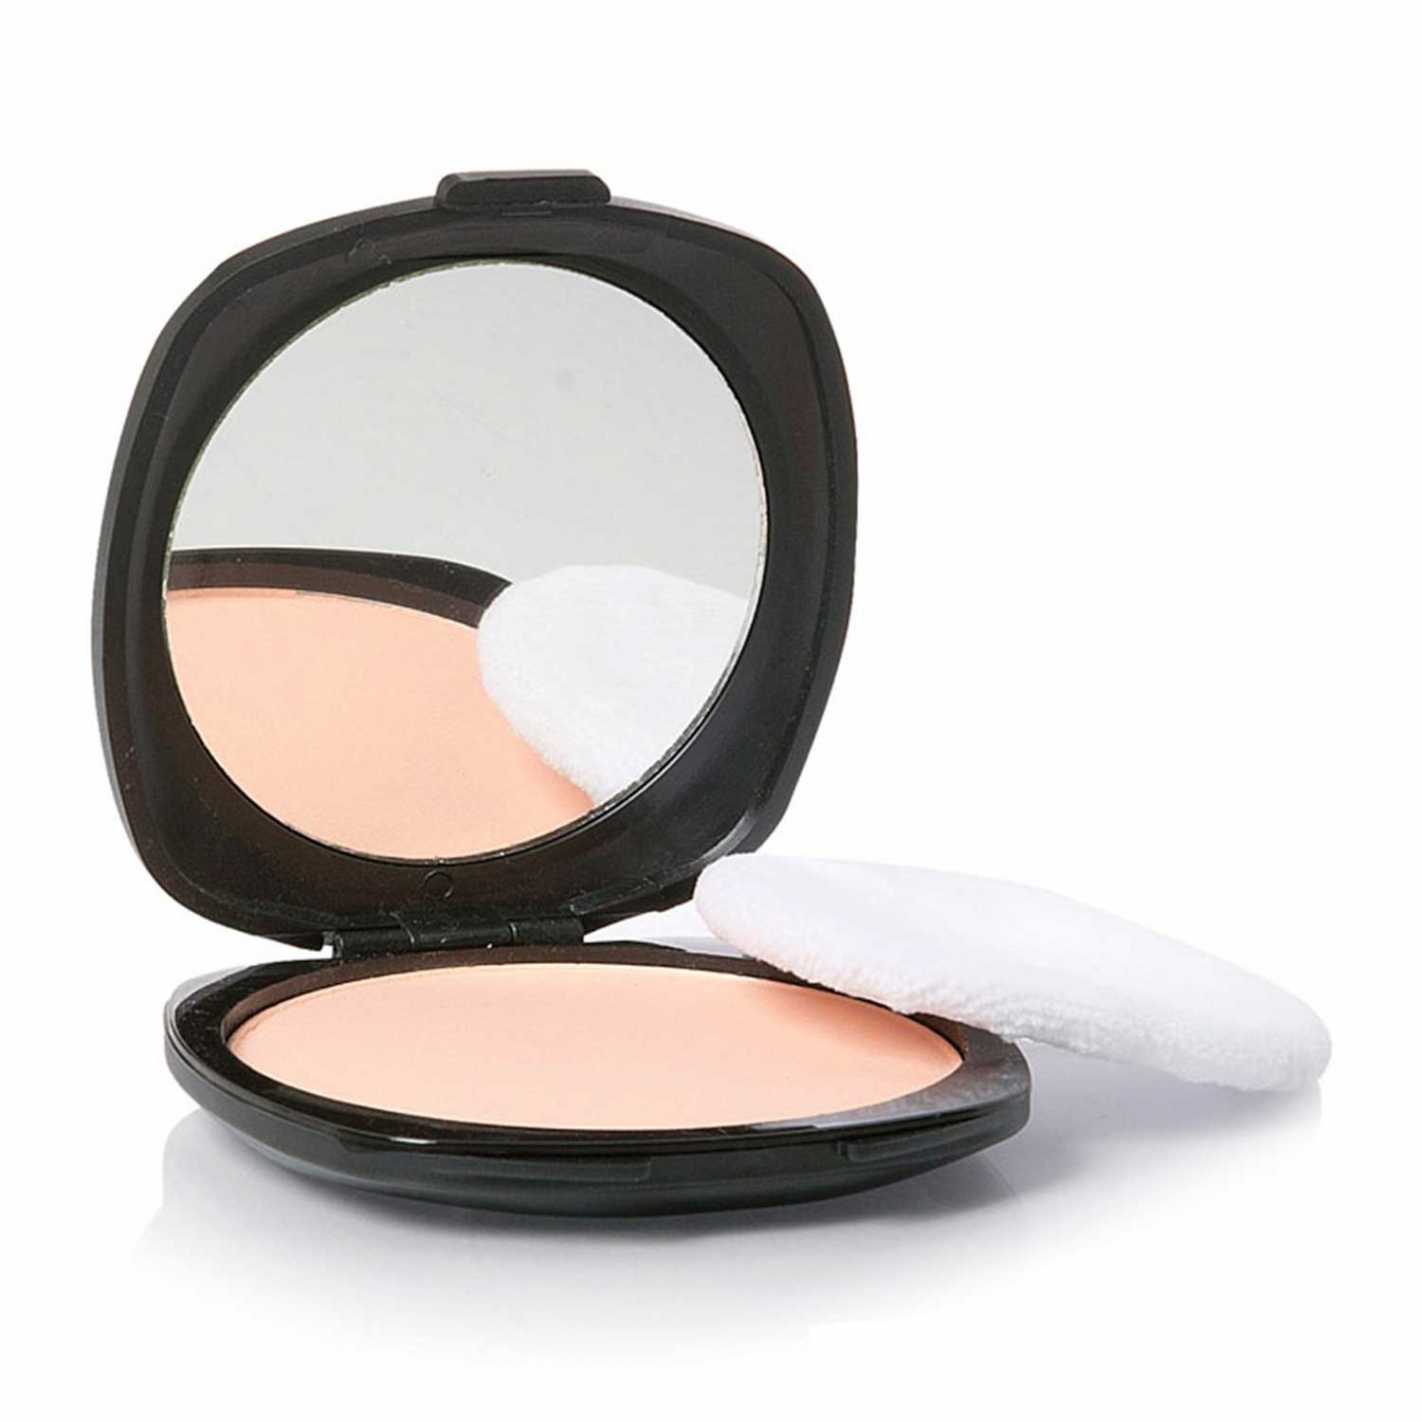 Maquillaje compacto en polvo ligero | Resultado natural